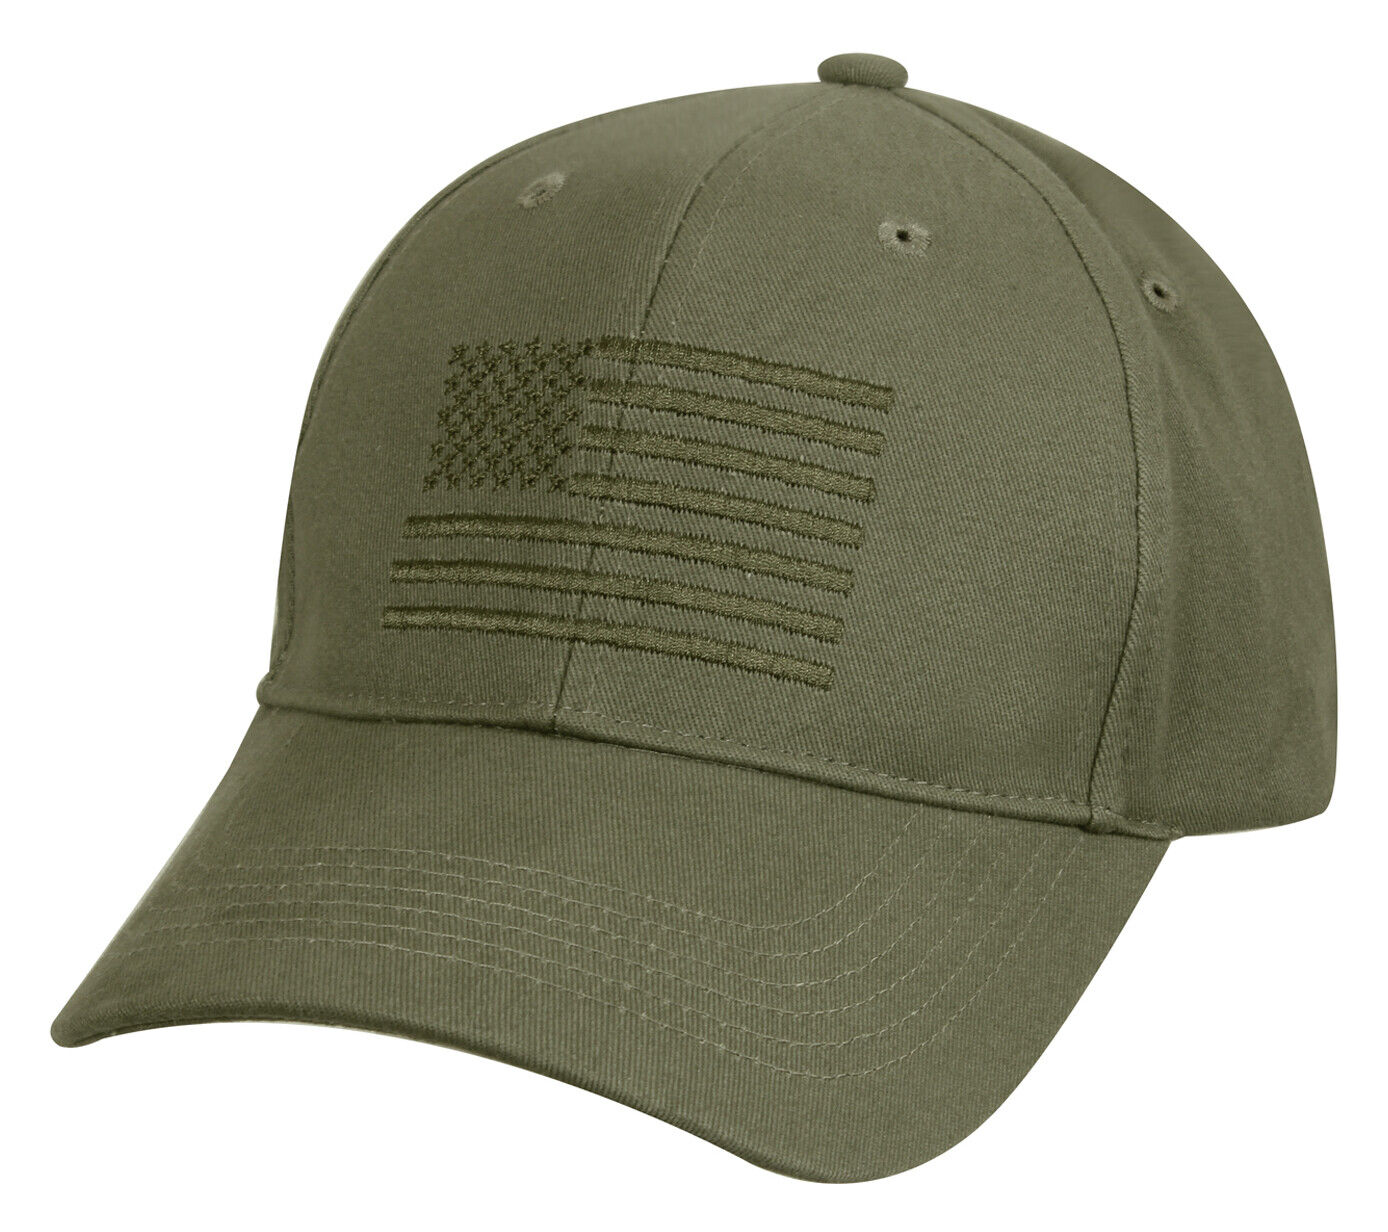 Embroidered US Flag Baseball Cap - Medium Profile Adjustable Hat